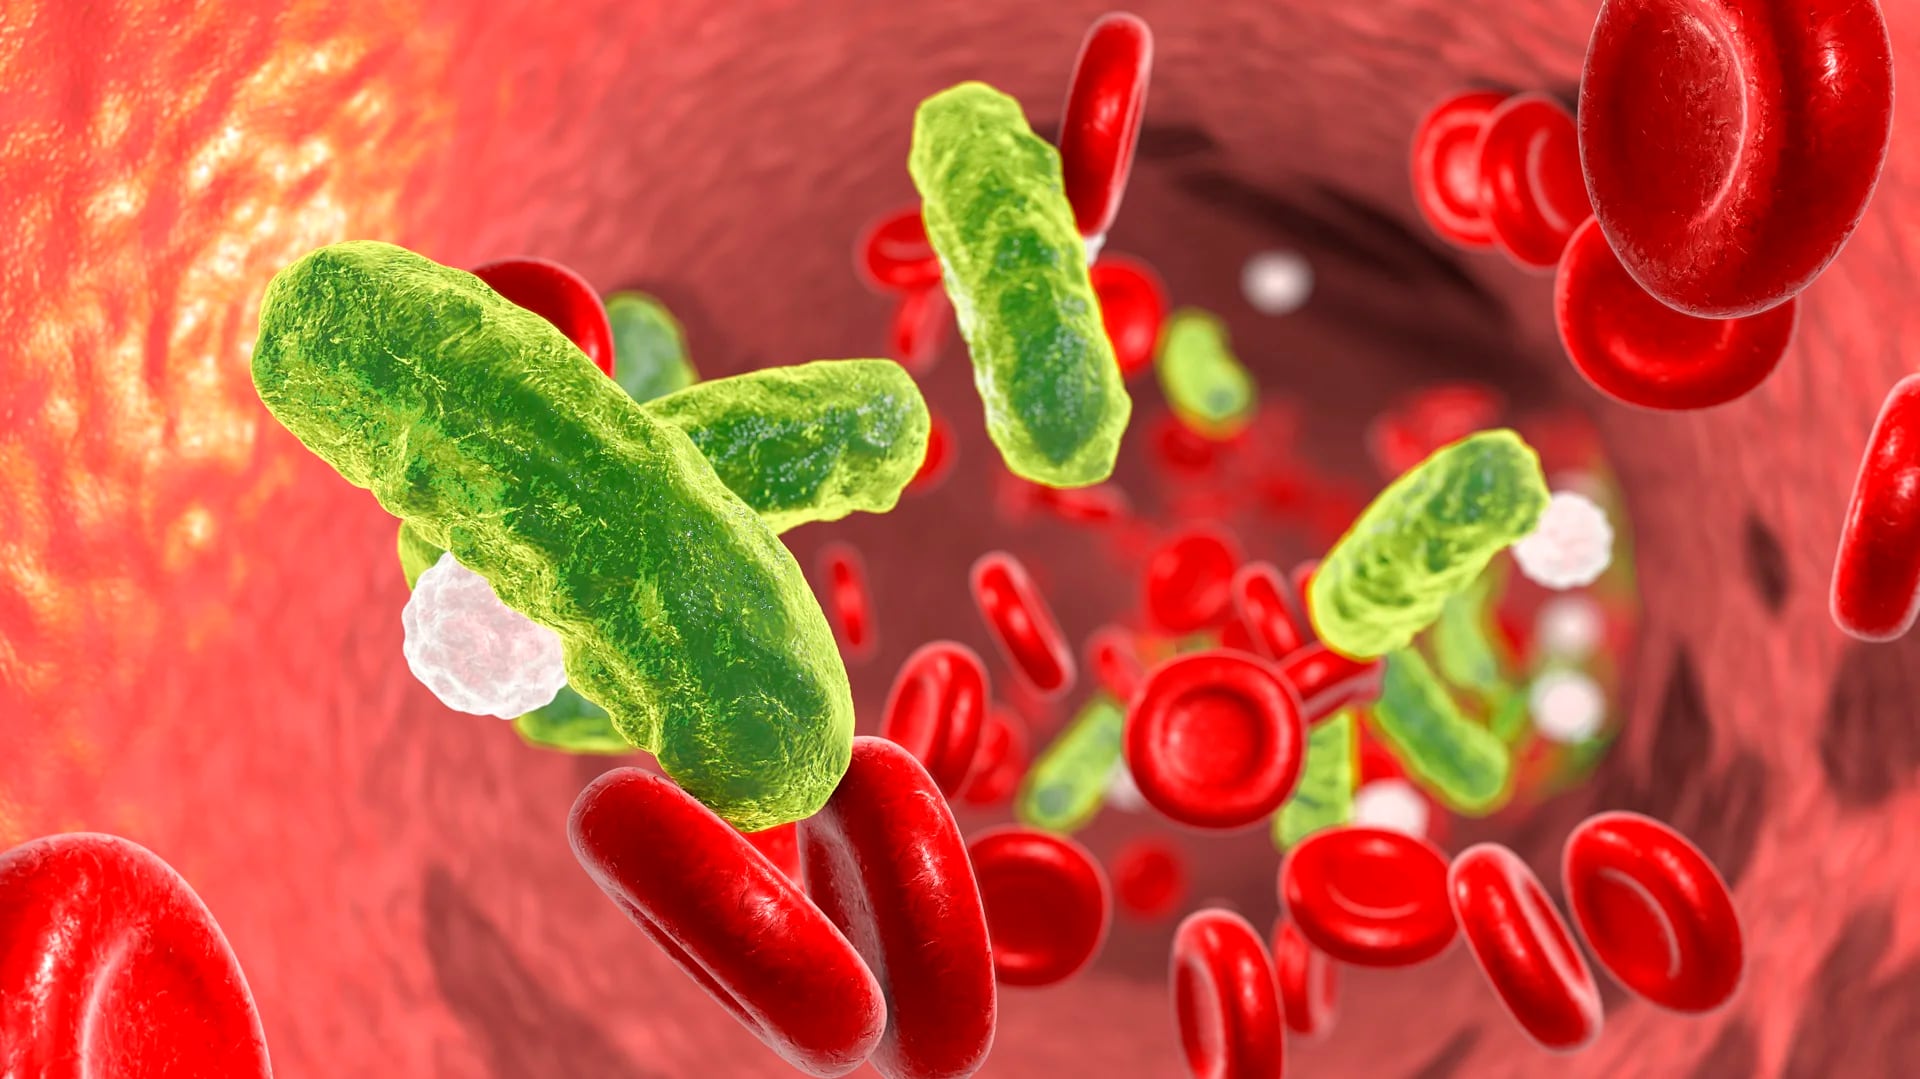 Las infecciones bacterianas pueden ser mortales. En 2019 produjeron la muerte de 7,7 millones personas en todo el mundo, según un estudio publicado en The Lancet (iStock)